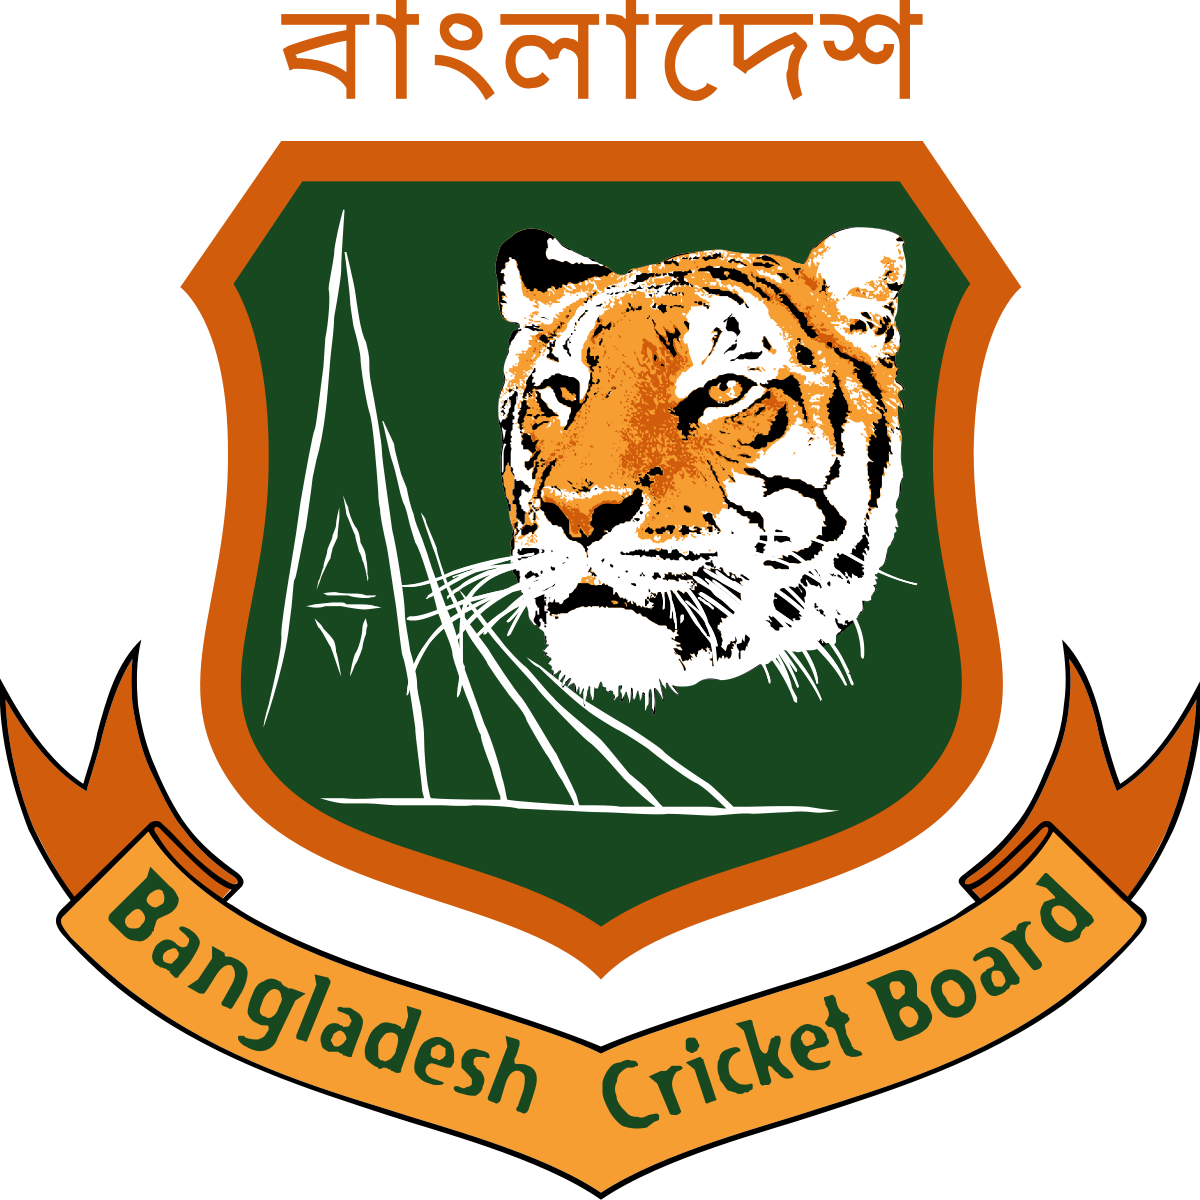 Bangladesh Cricket Boarden.org